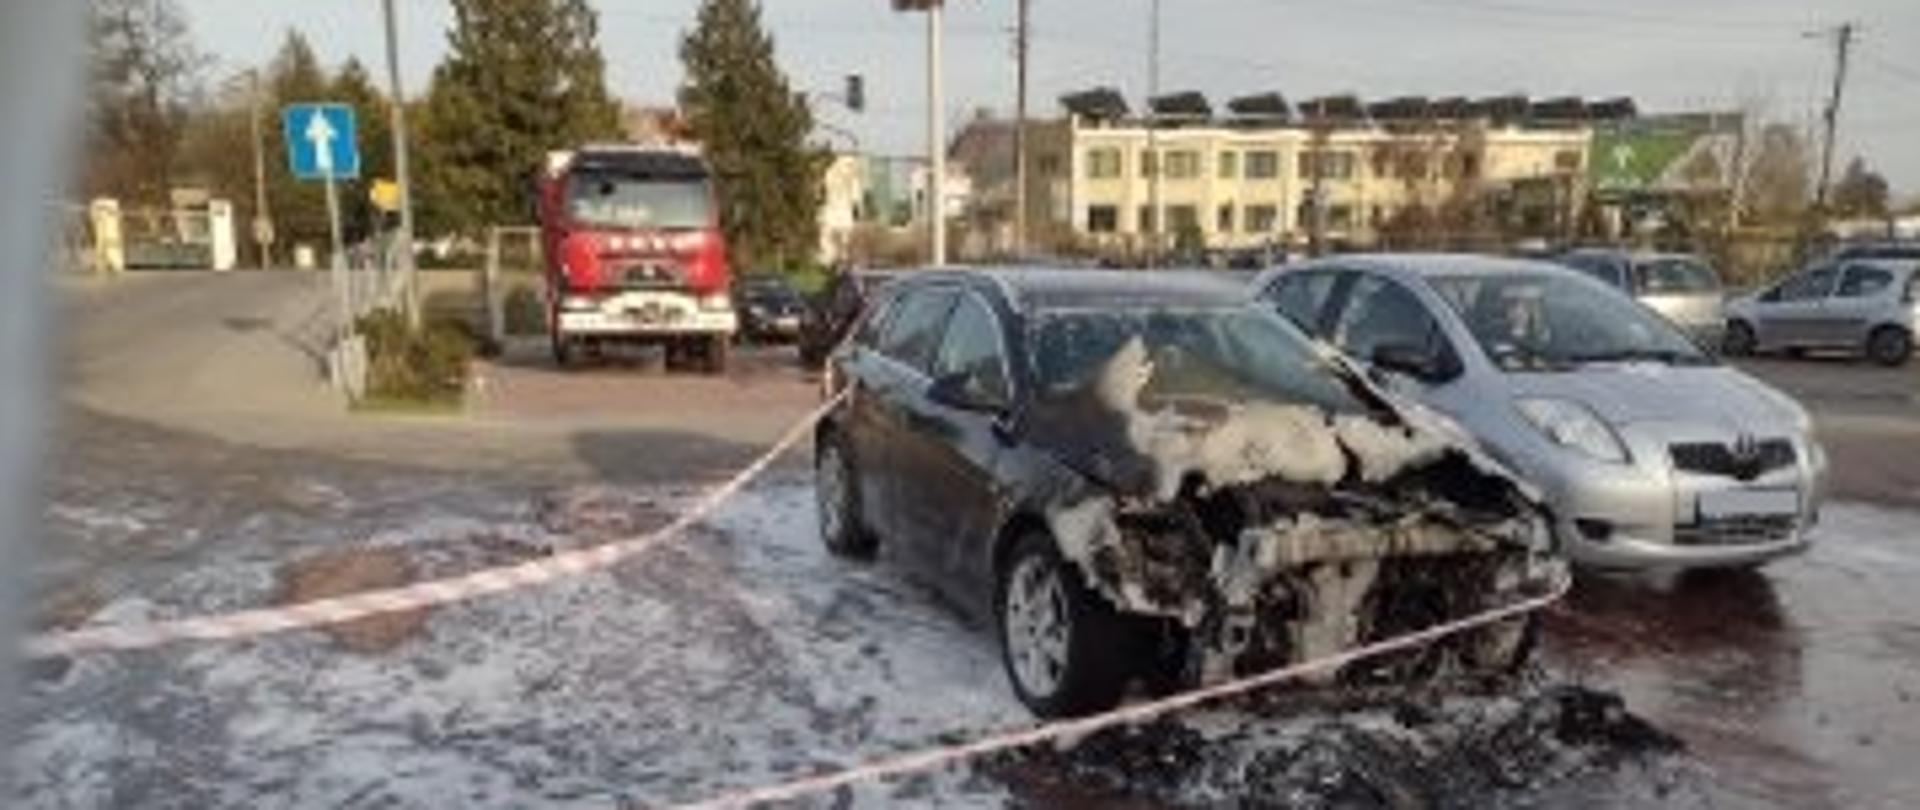 Pożar samochodu na przysklepowym parkingu w Gostyninie